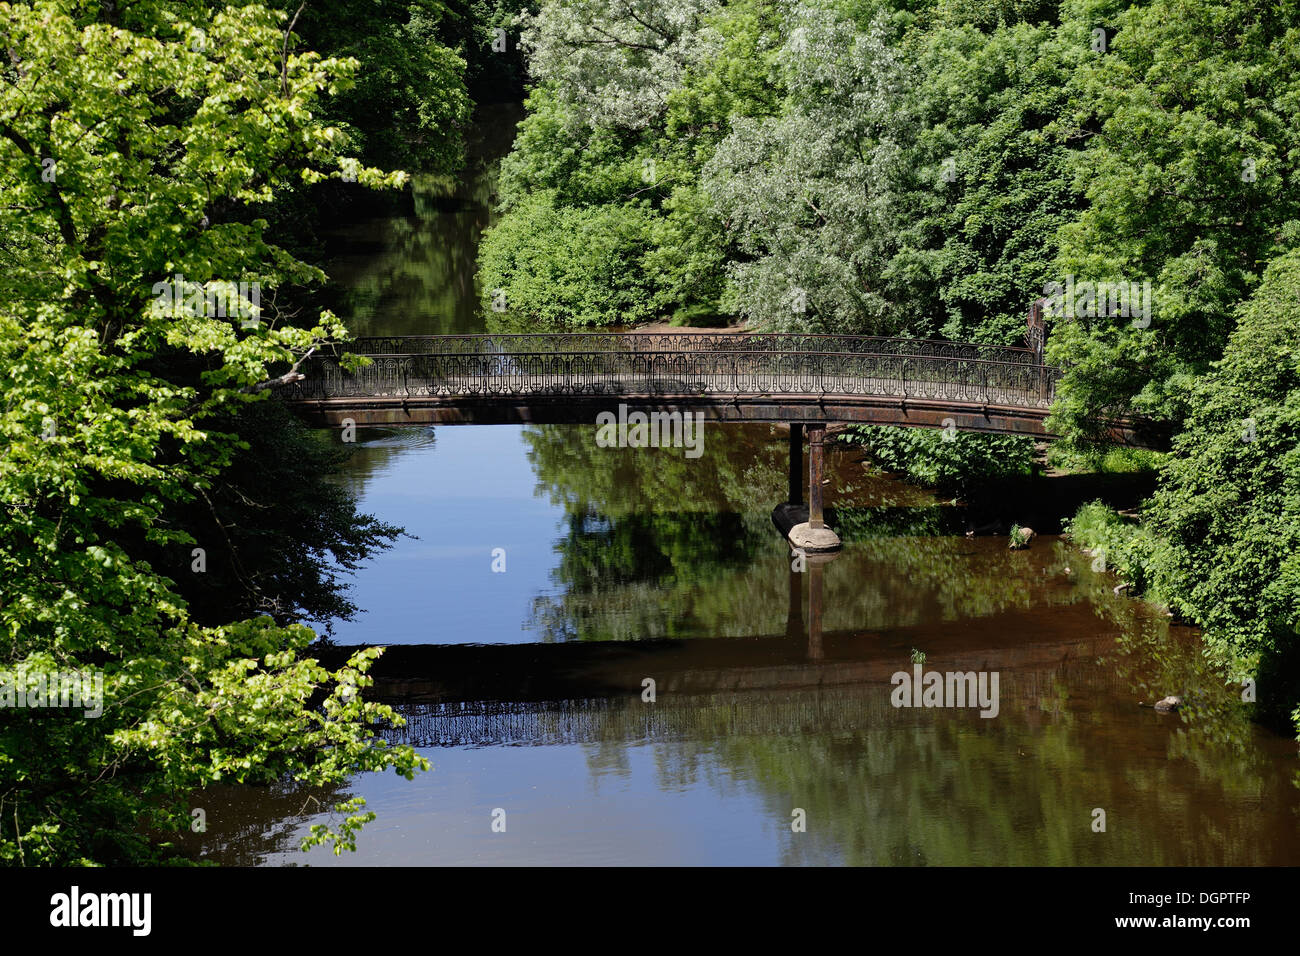 Glasgow Botanic Gardens, ponte pedonale sul fiume Kelvin nel parco pubblico nel West End di Glasgow, Scozia, Regno Unito Foto Stock